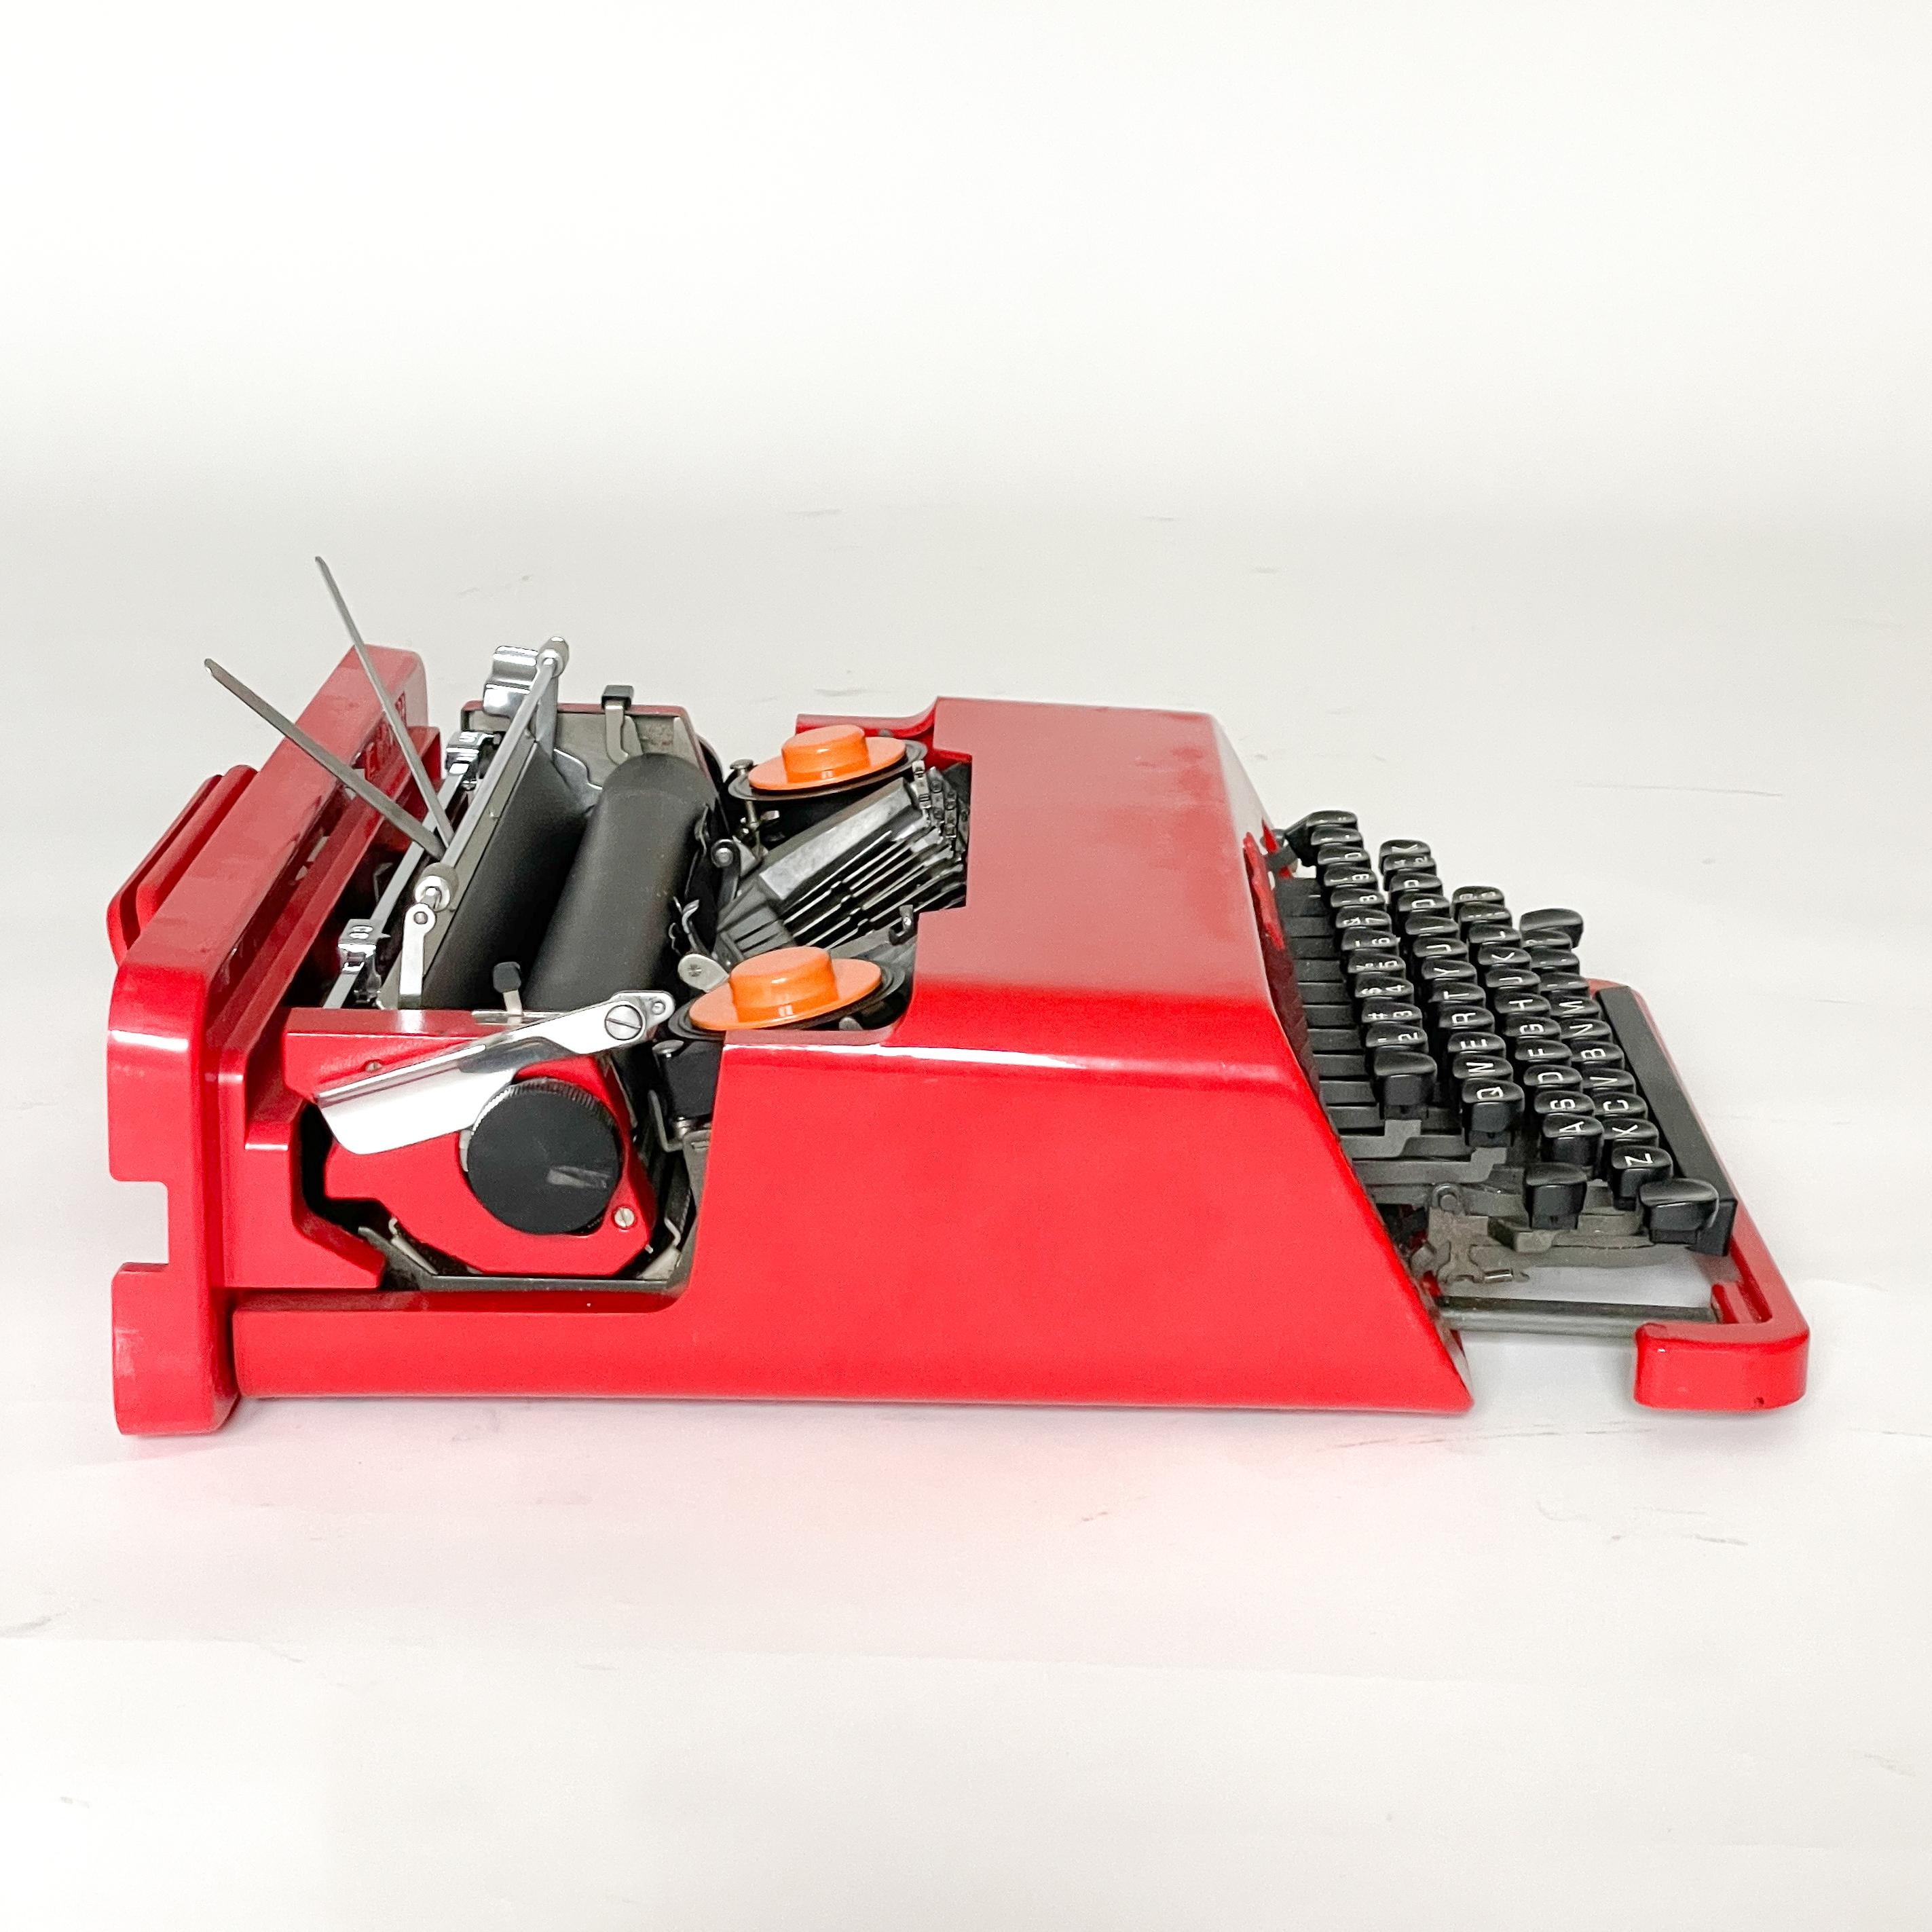 Métal Ettore Sottsass Olivetti Valentine machine à écrire Valentine des années 1960 en vente